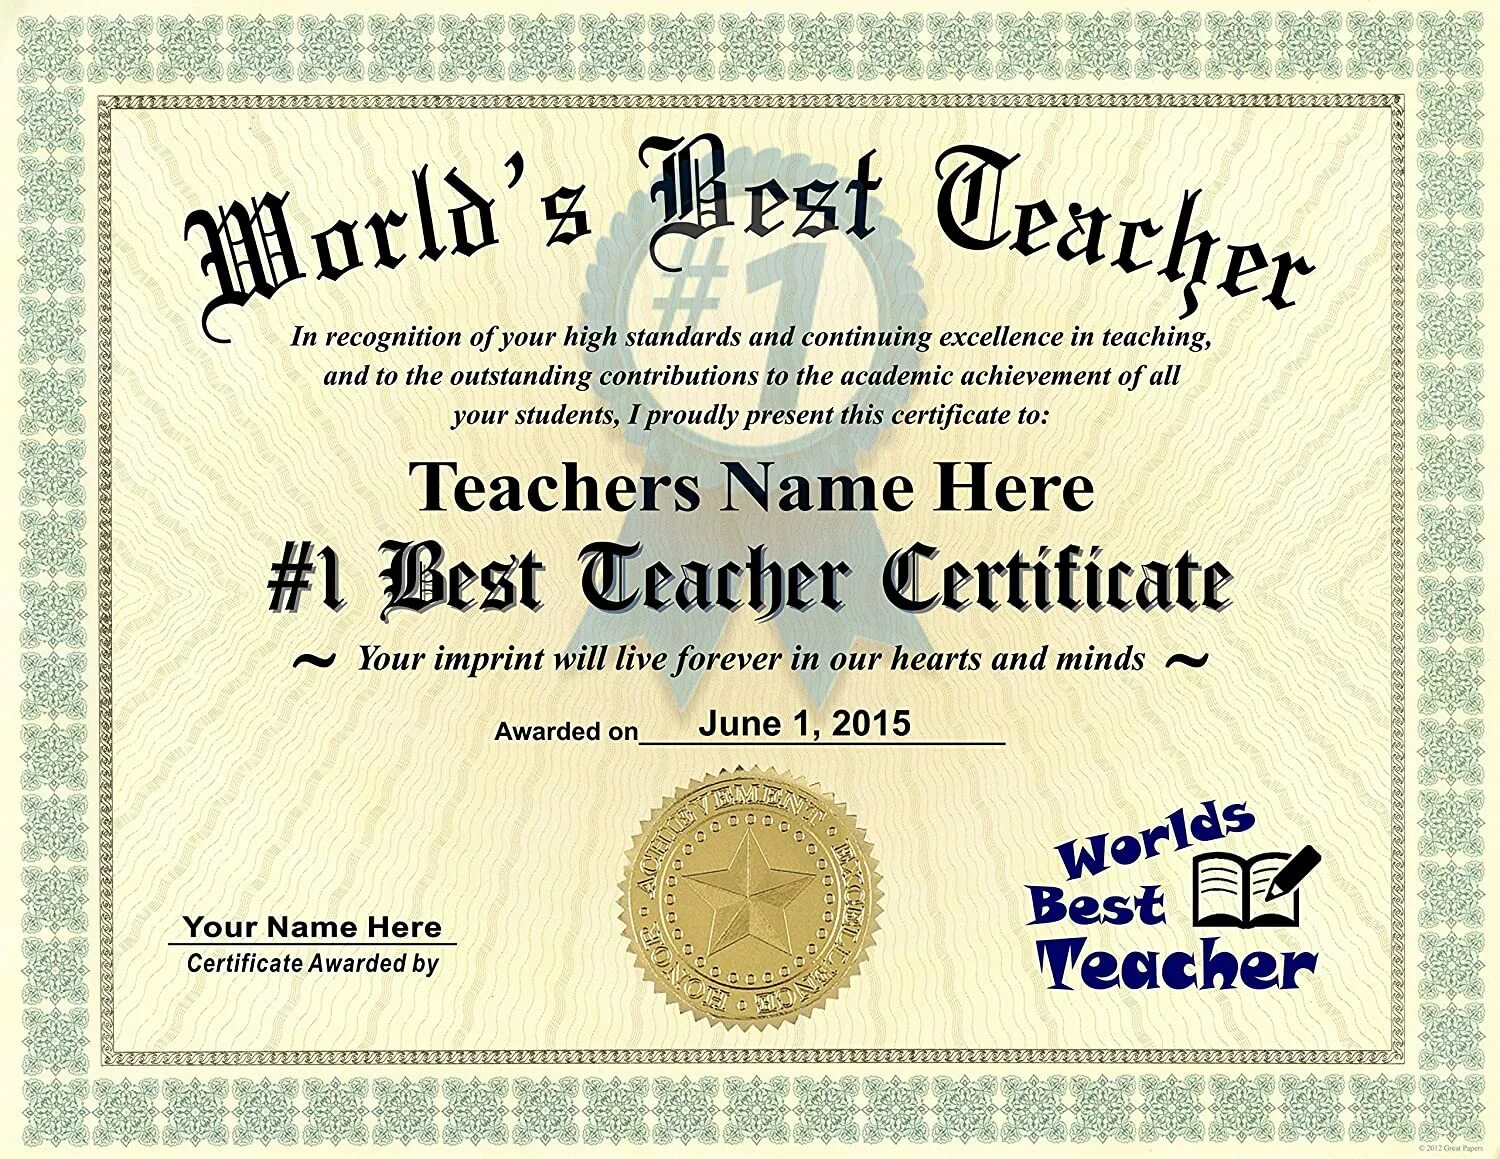 Best teacher Certificate. Certificate учительница. Certificate Awarded best teacher. Award Certificate for teachers. Teacher awards